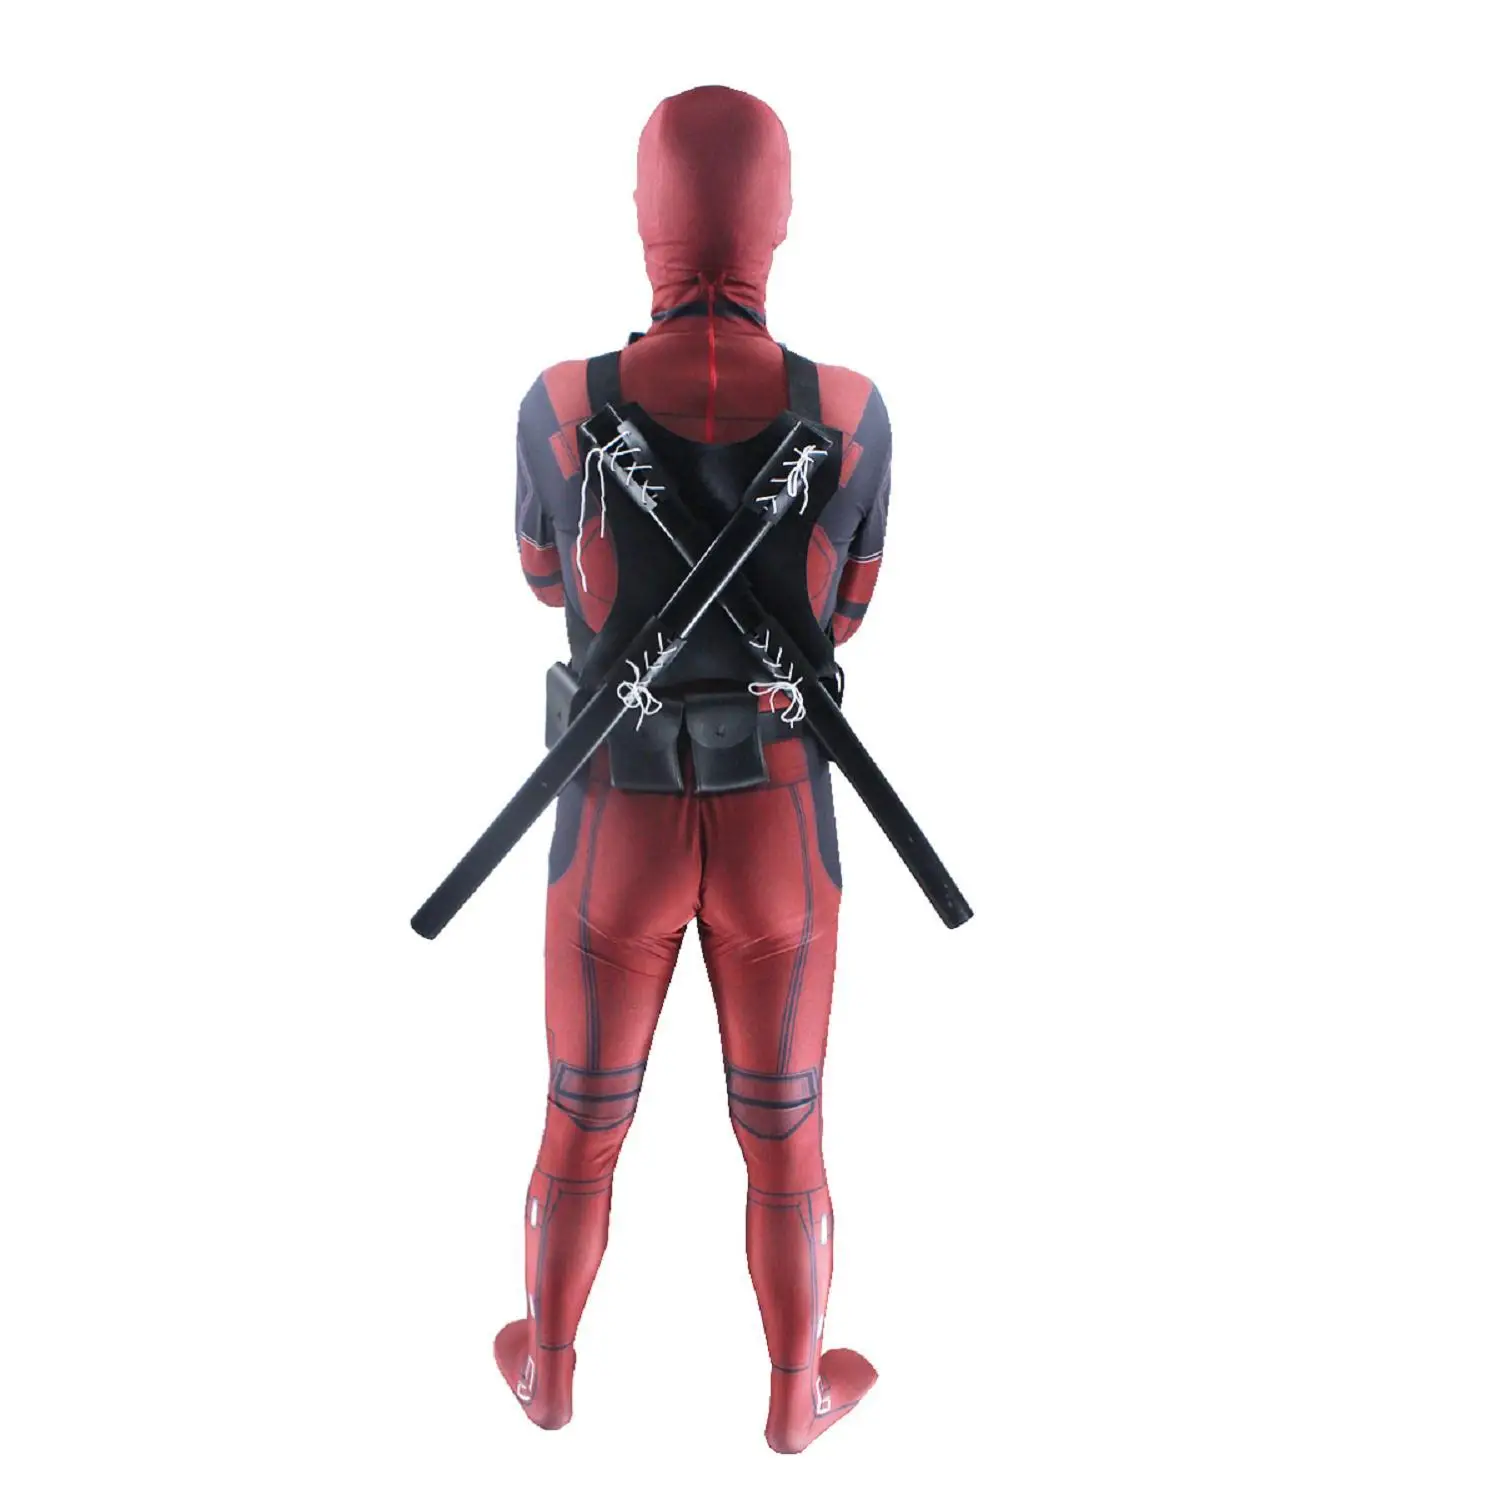 Дэдпул костюм Дэдпул Cospaly всего тела дополнительный пояс 3D супер герой Косплей XMAN Мстители для взрослых детей